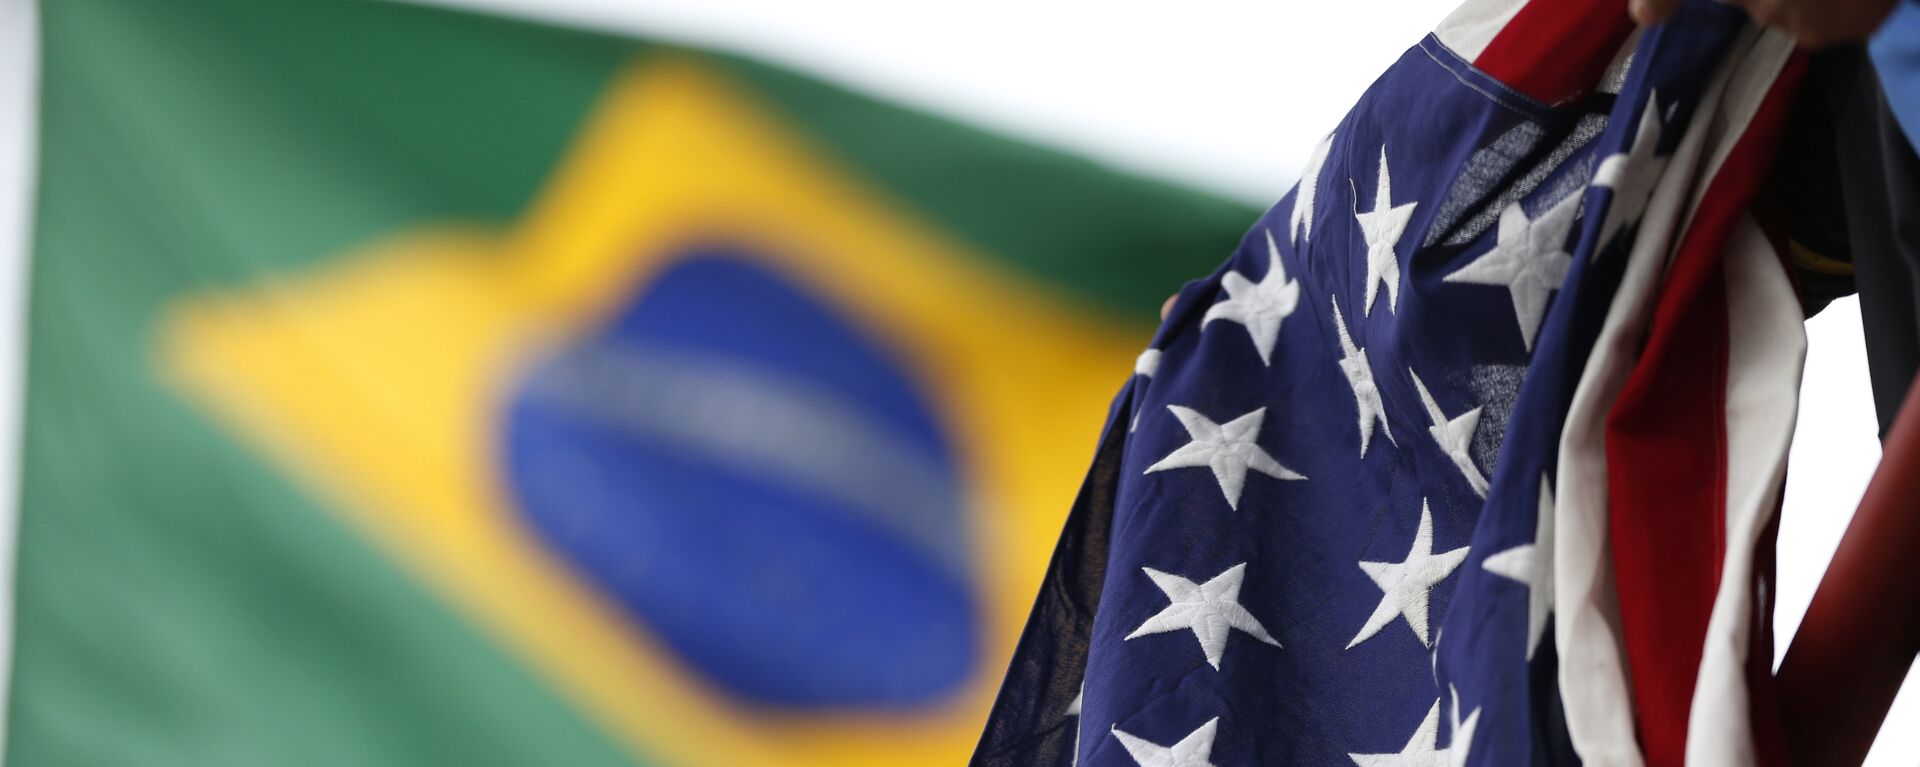 Bandeiras do Brasil e dos EUA - Sputnik Brasil, 1920, 17.07.2019